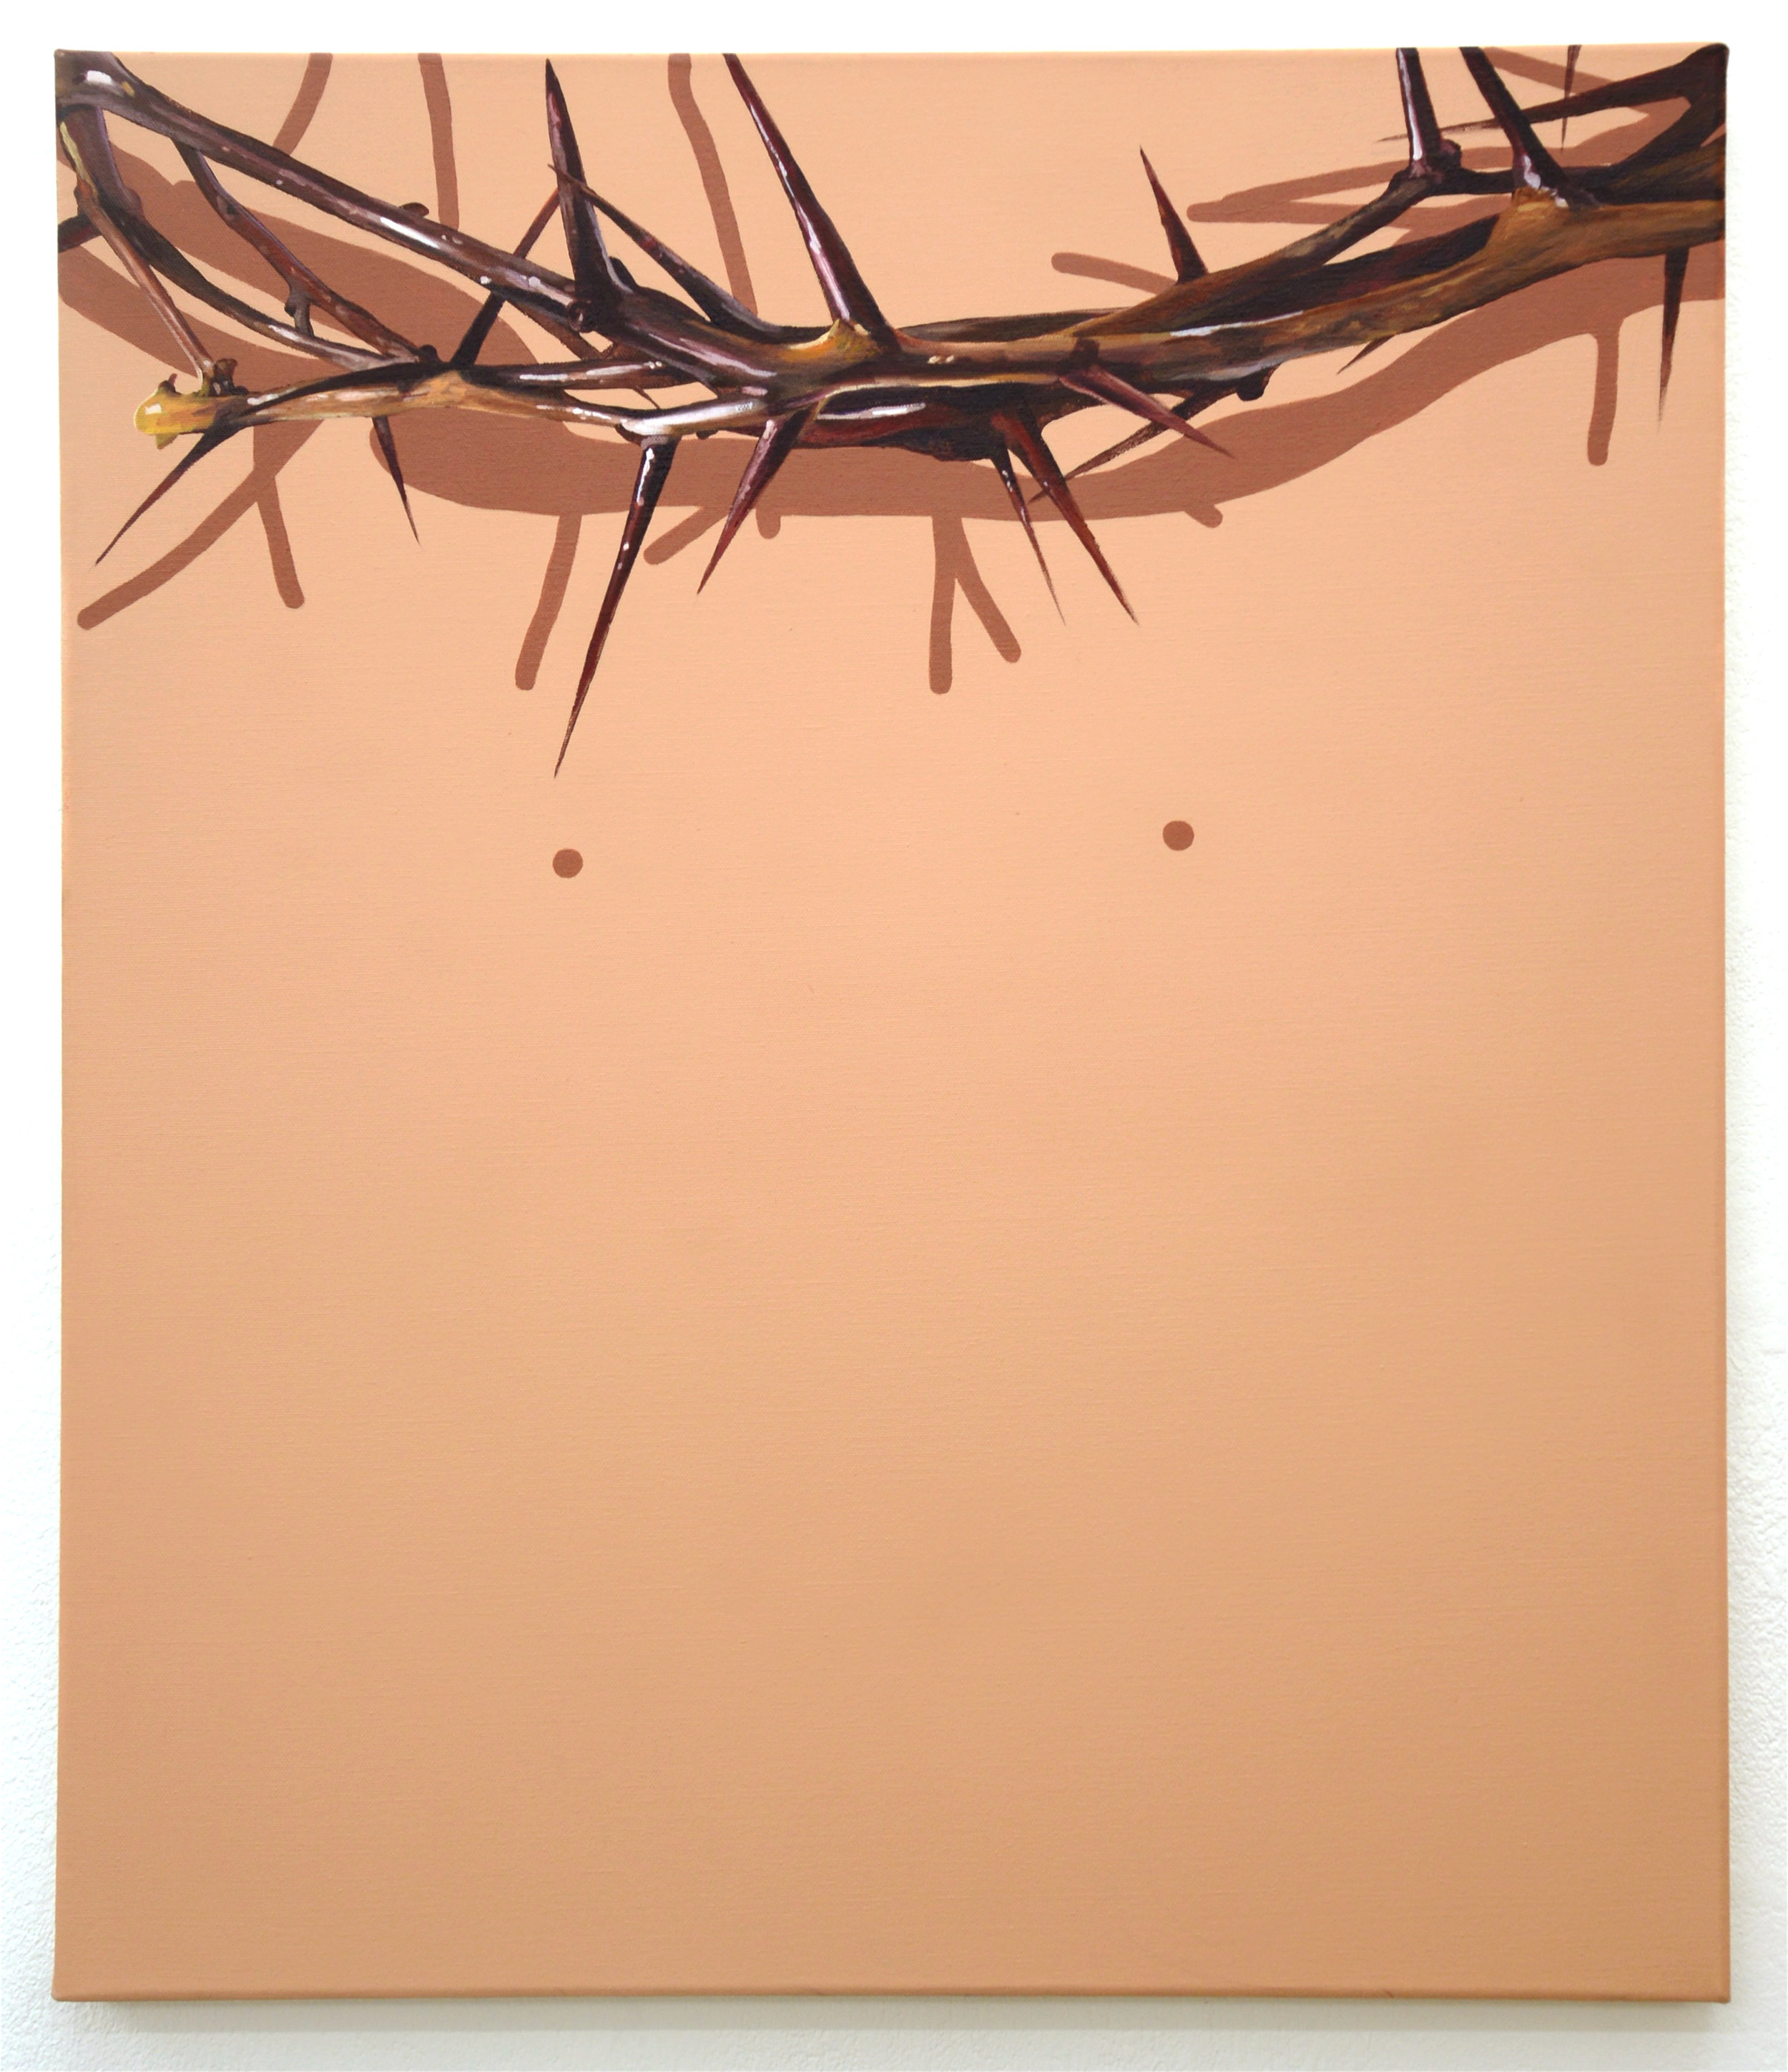 Christ, oil and acrylic on canvas, 60cm x 70cm, 2016